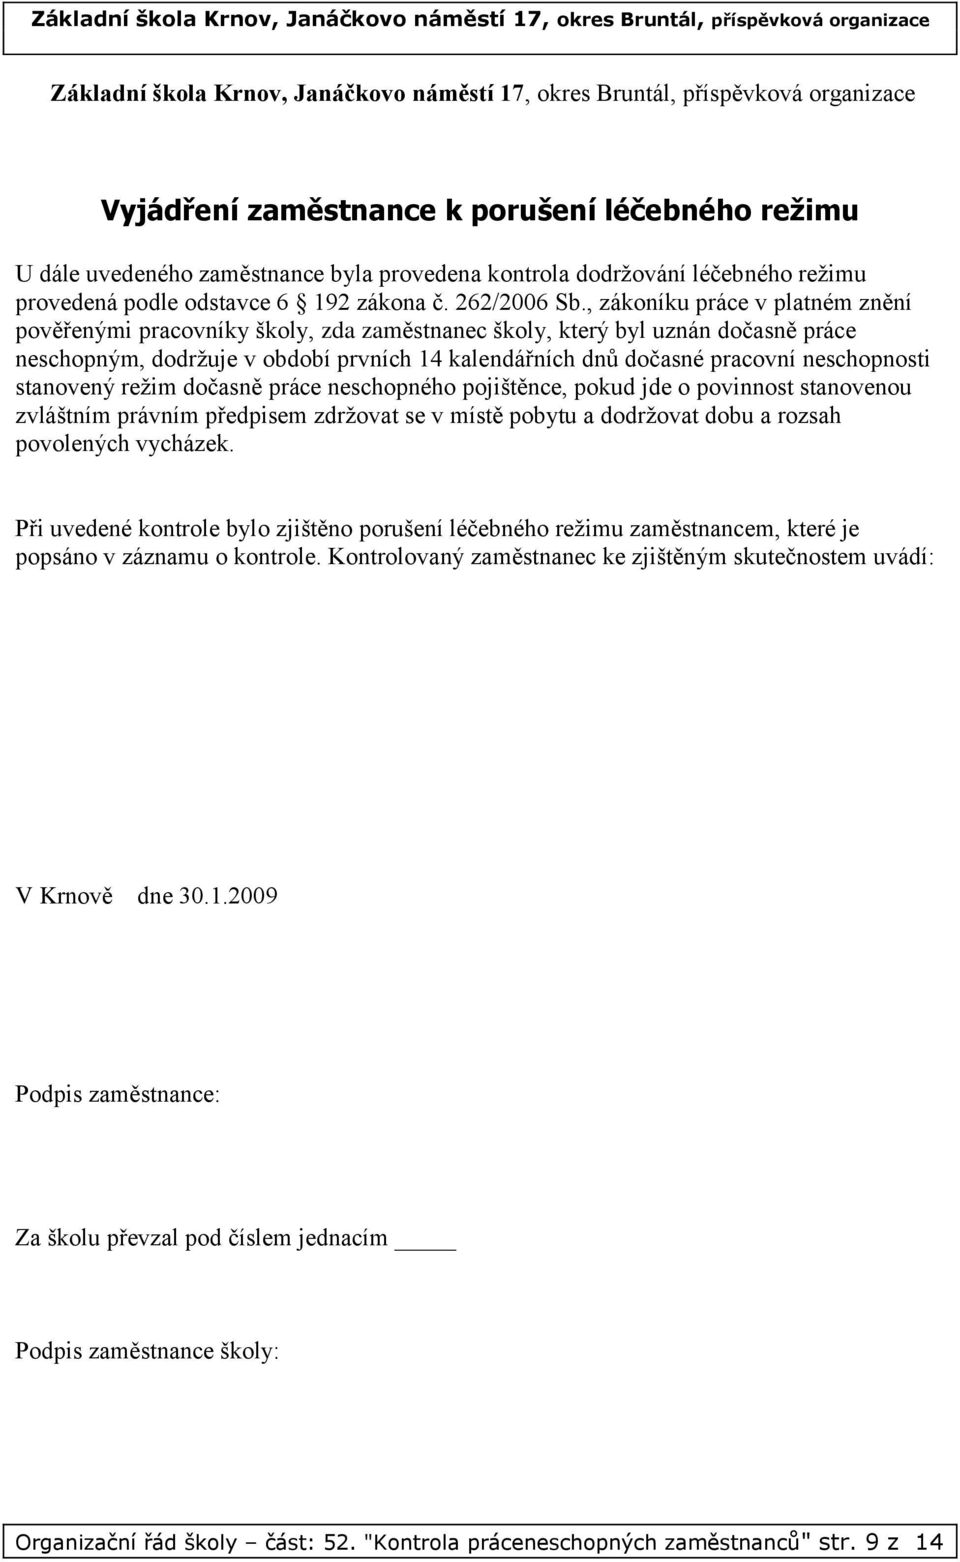 ORGANIZAČNÍ ŘÁD ŠKOLY - PDF Free Download